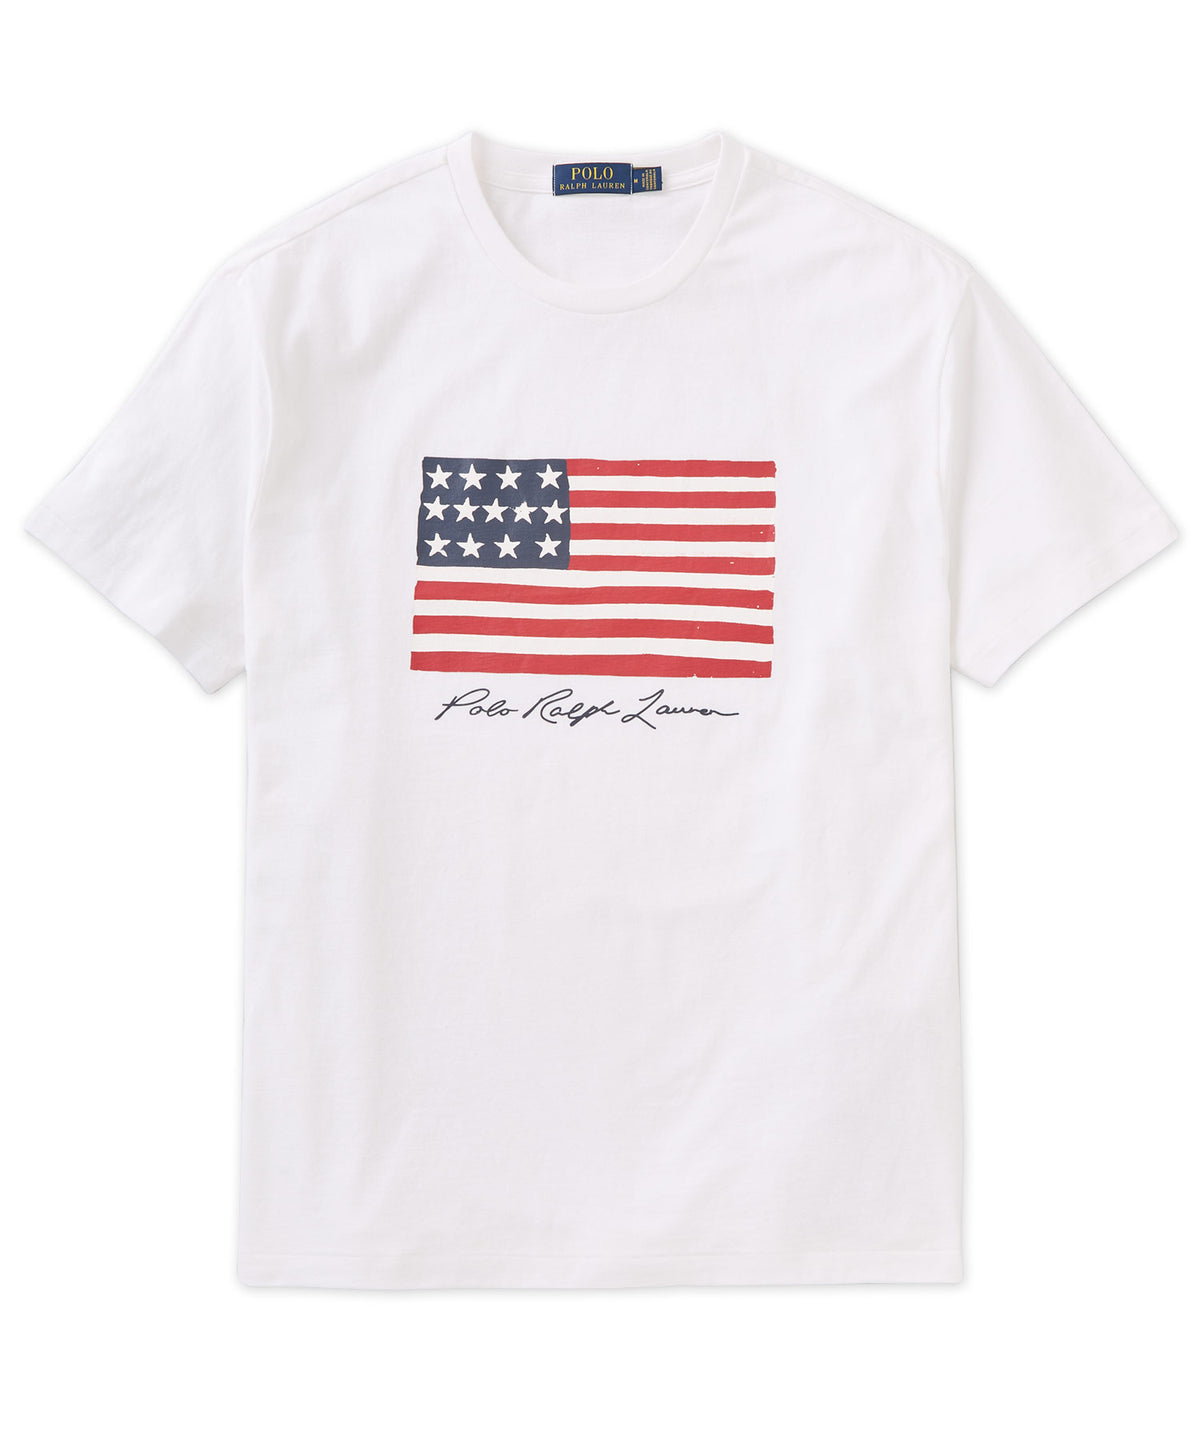 T-shirt Polo Ralph Lauren a maniche corte con bandiera americana, Men's Big & Tall